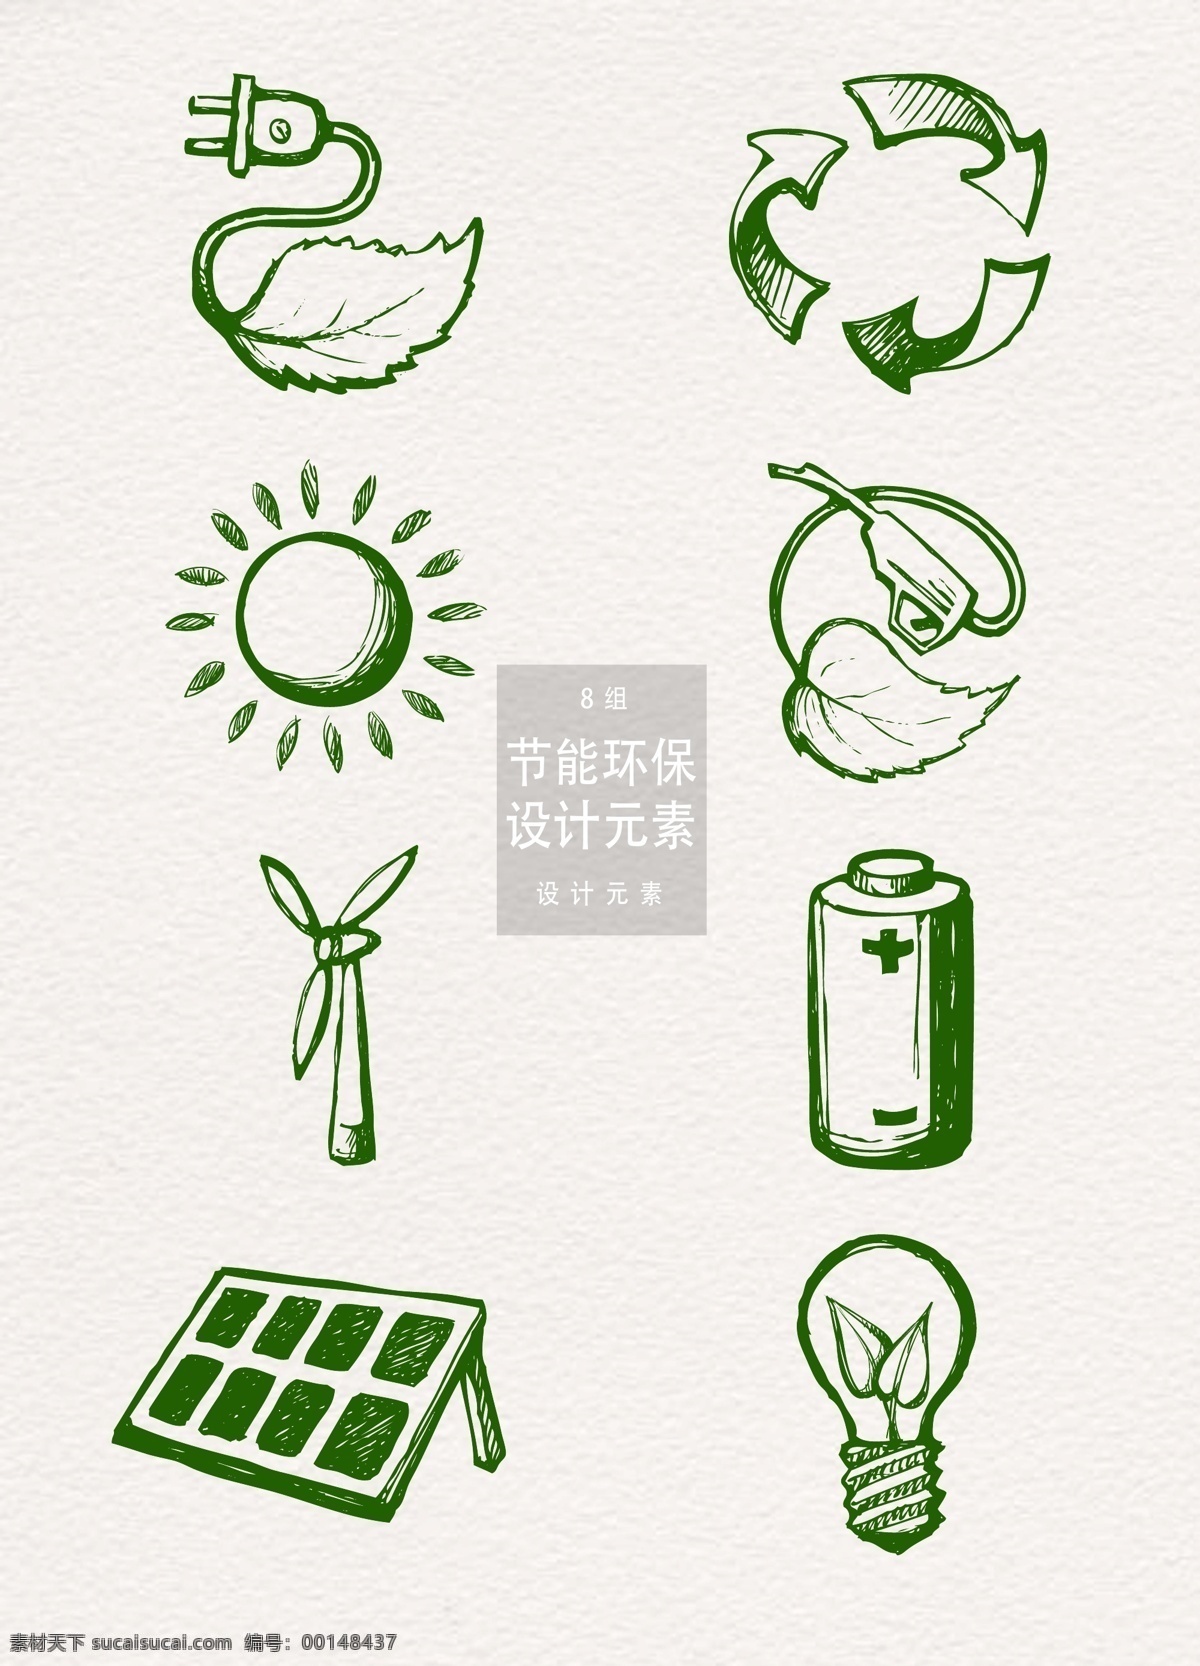 手绘 节能环保 元素 绿色环保 叶子 太阳 灯泡 环保元素 设计元素 爱护地球 ai素材 节能 太阳能 电池 风车 风力发电